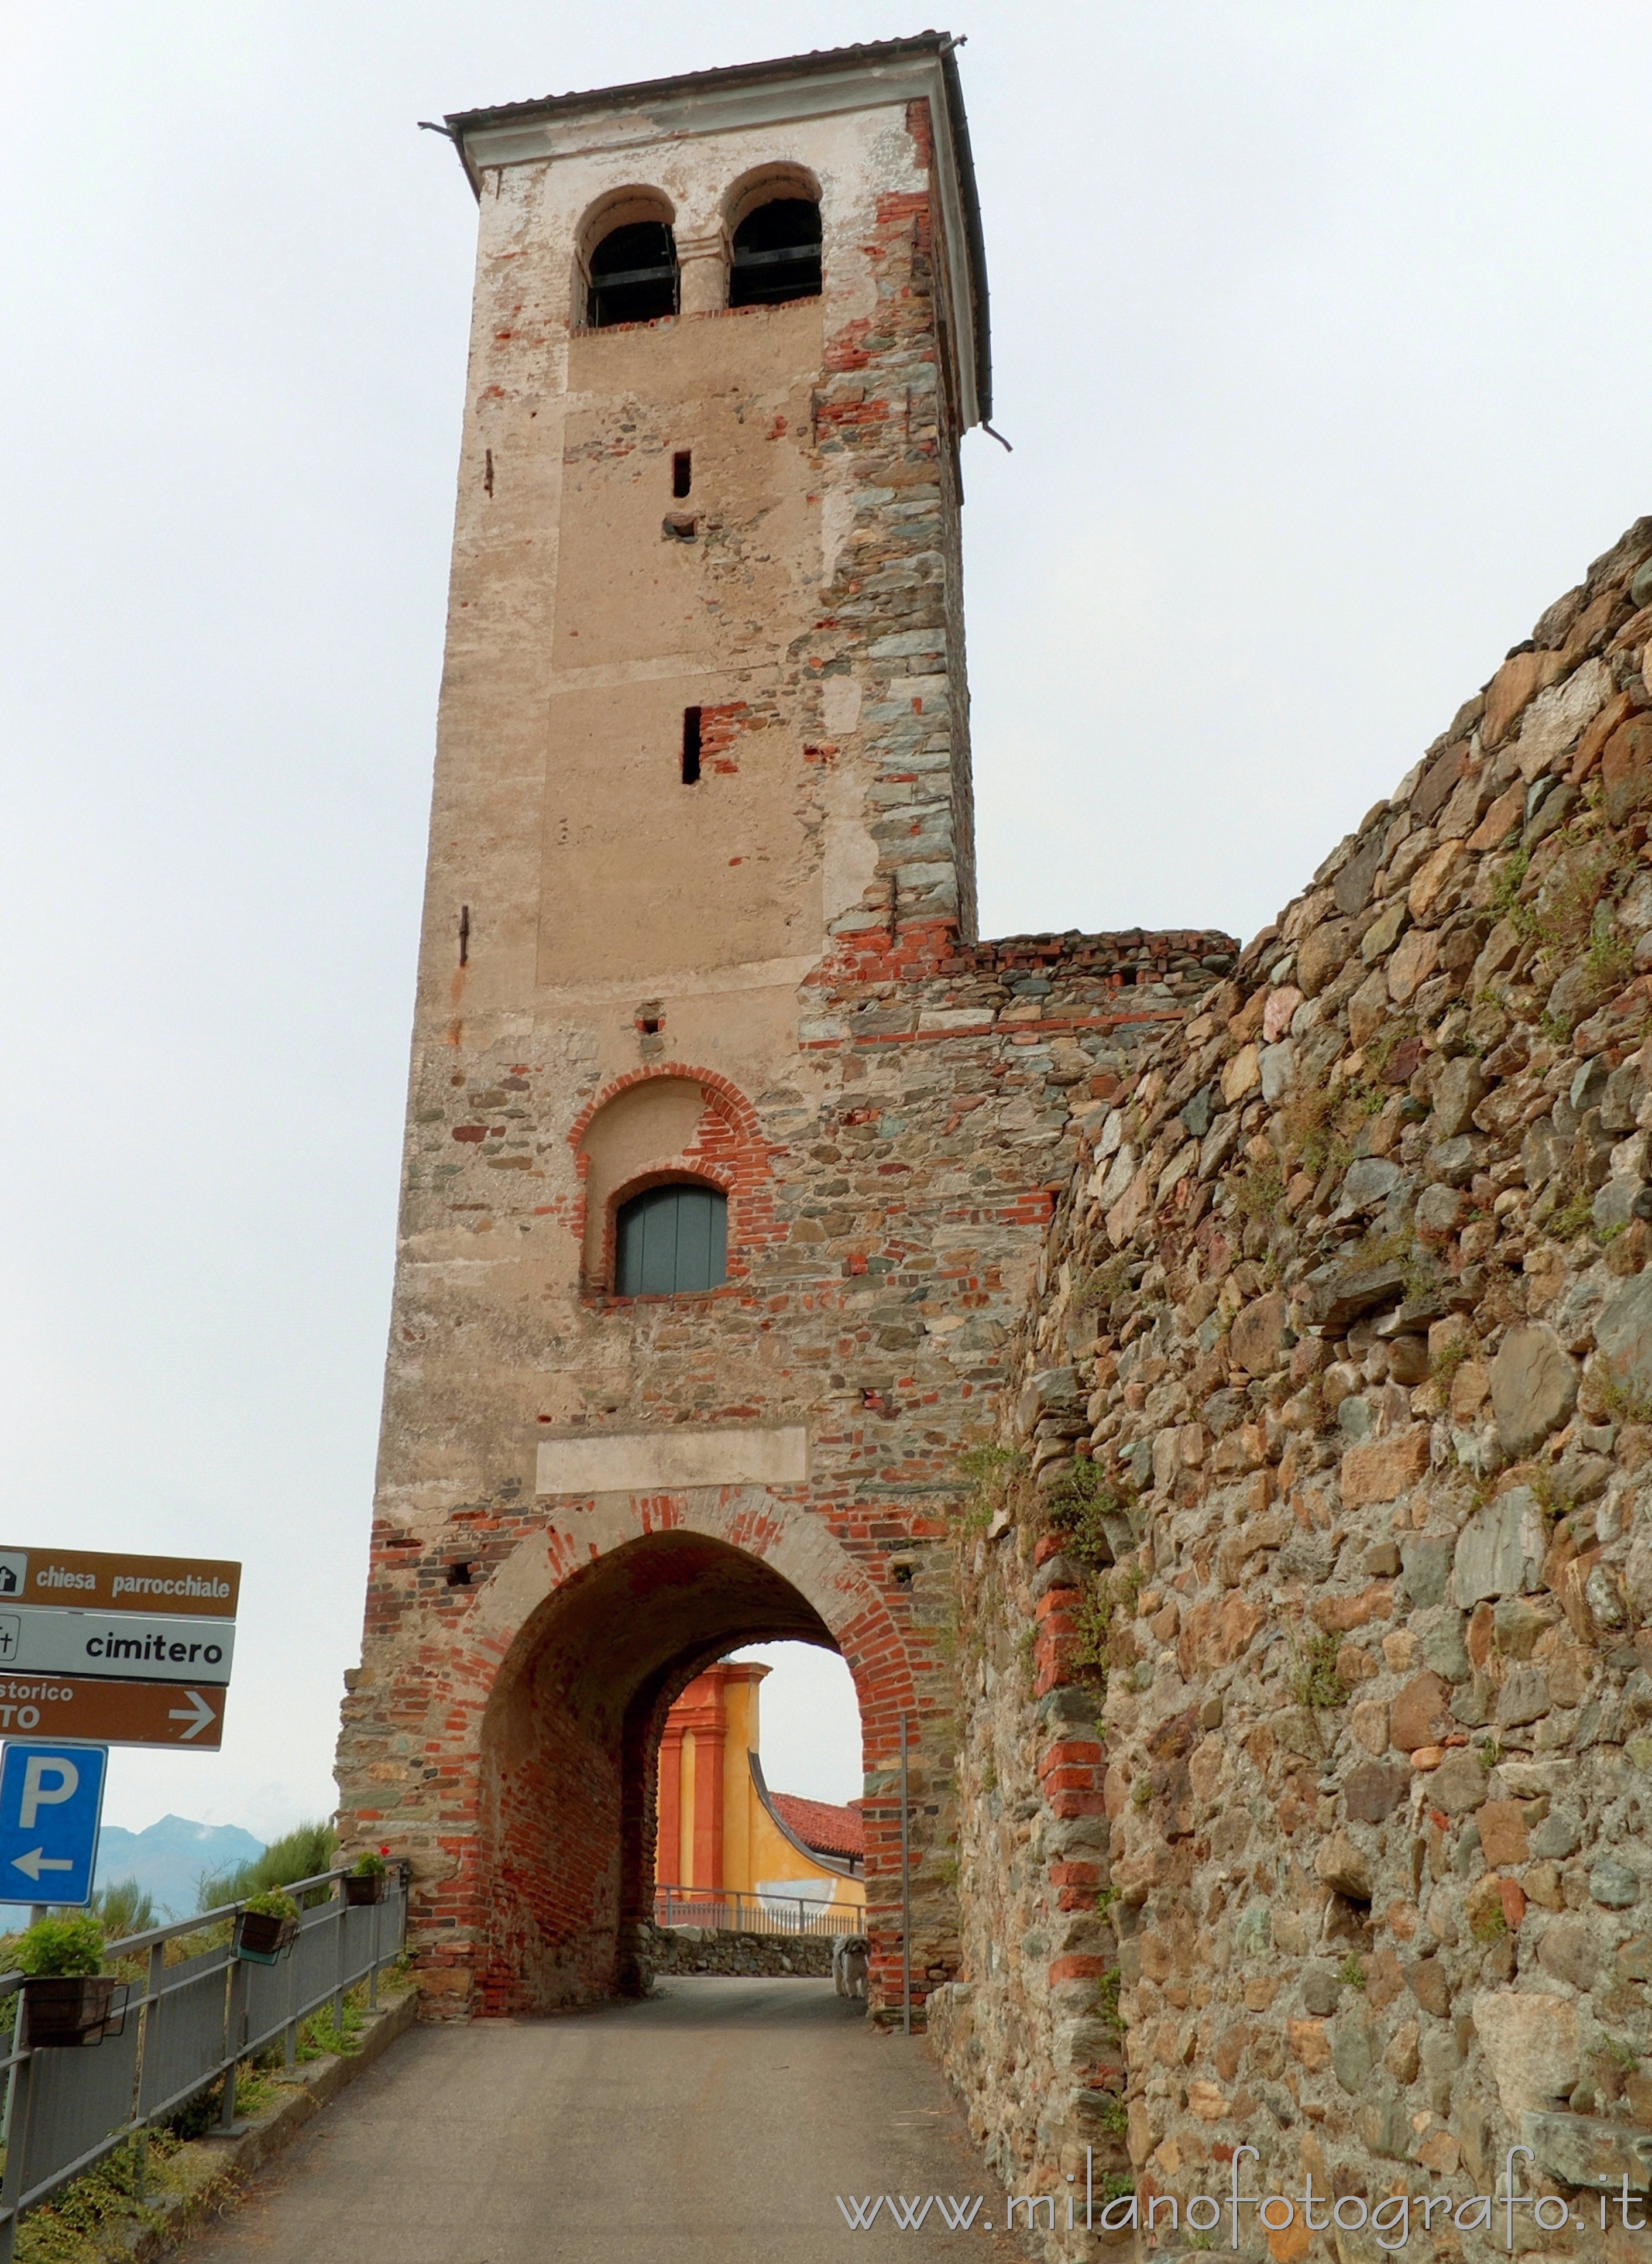 Magnano (Biella, Italy): Medieval tower at the entrance to the ricetto - Magnano (Biella, Italy)